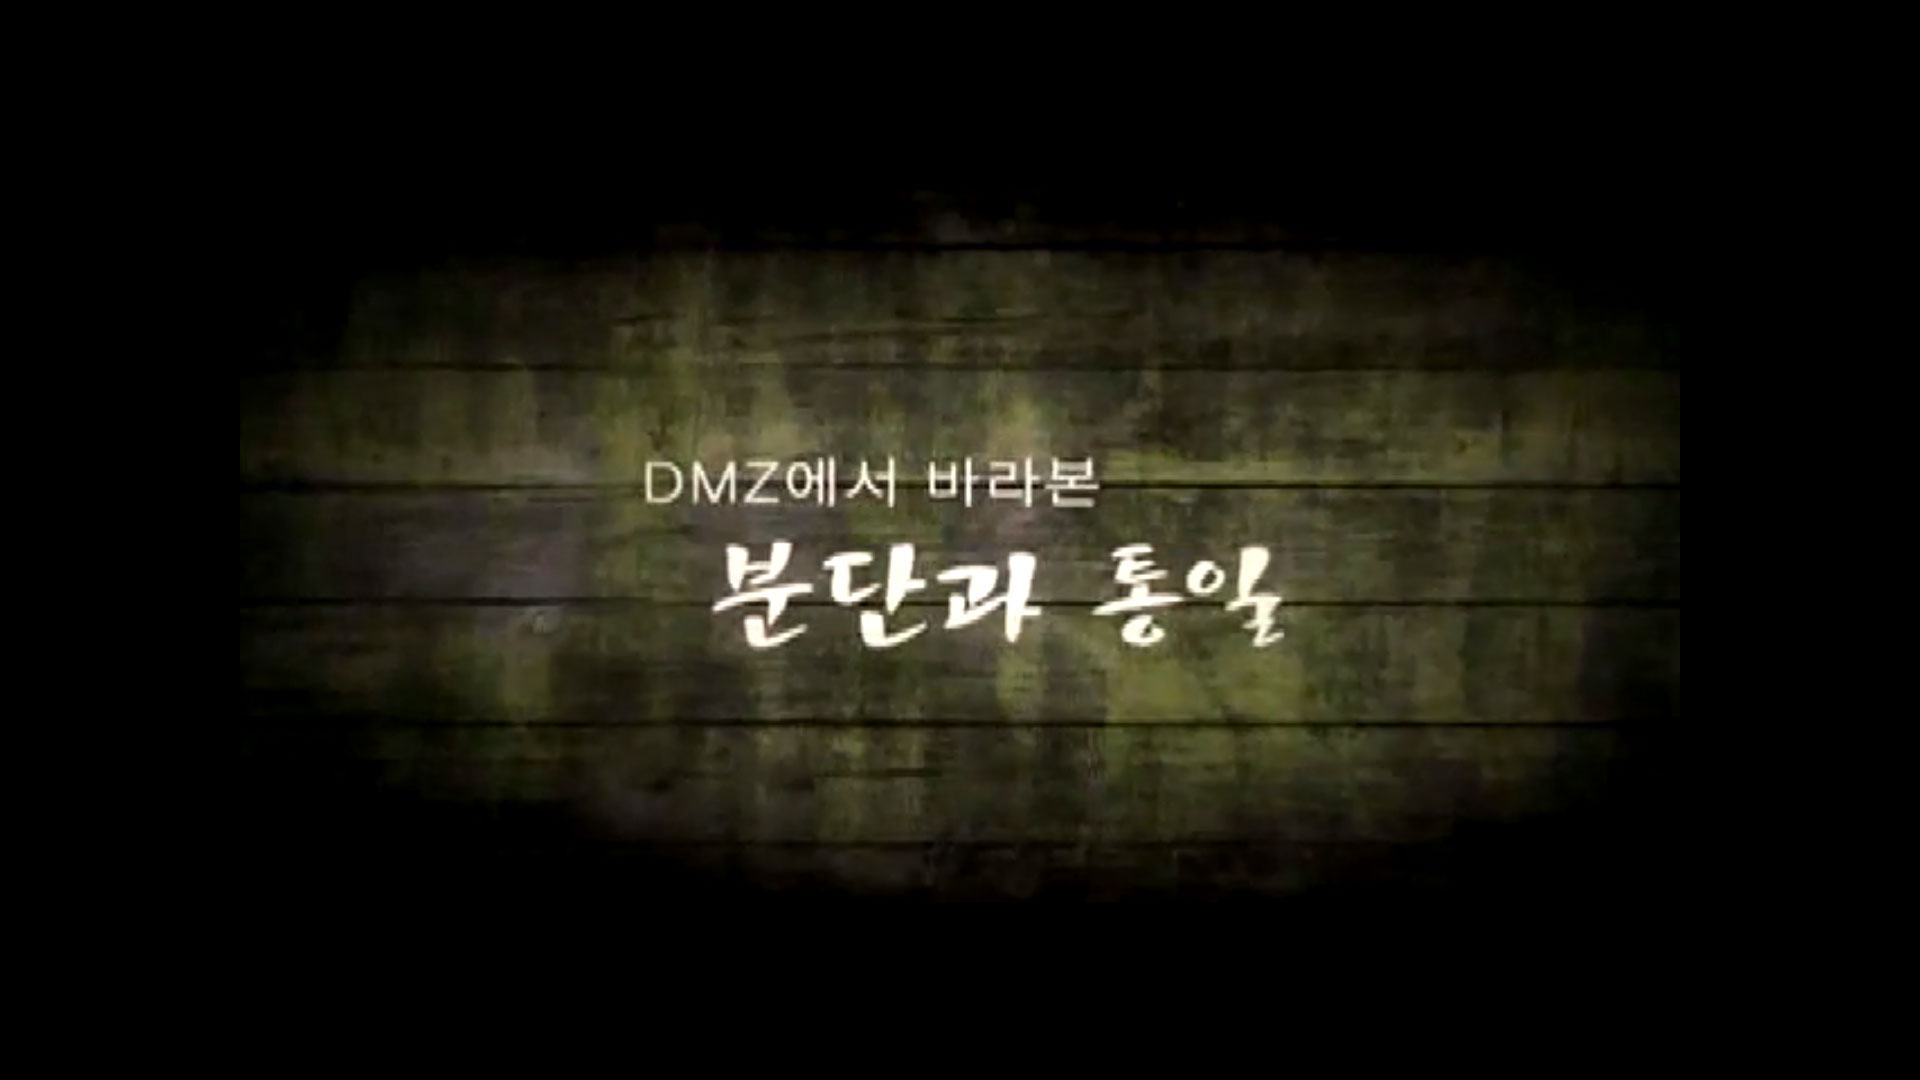 [동영상] DMZ에서 바라본 분단과 통일